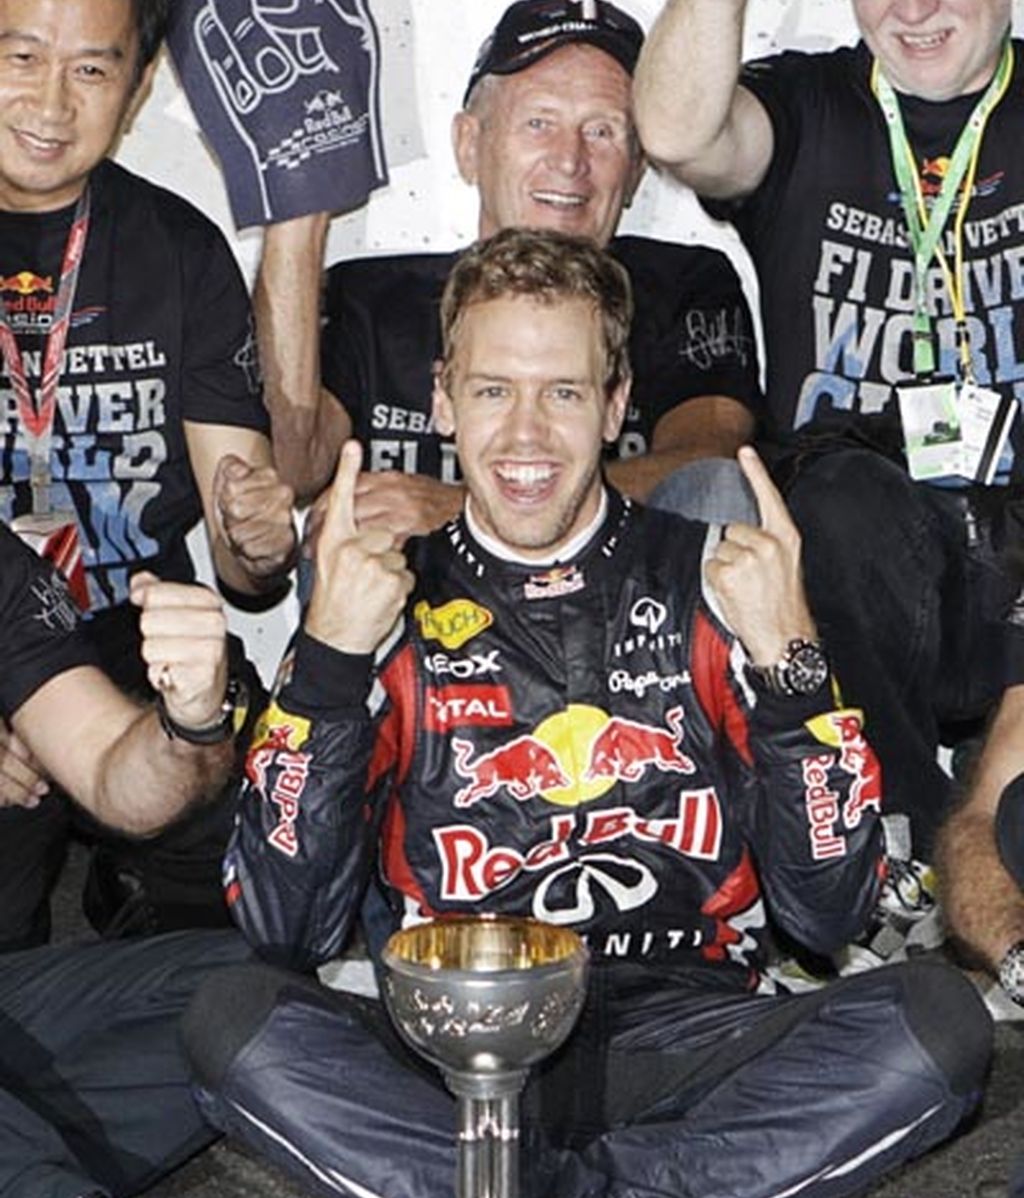 Vettel, bicampeón en Suzuka